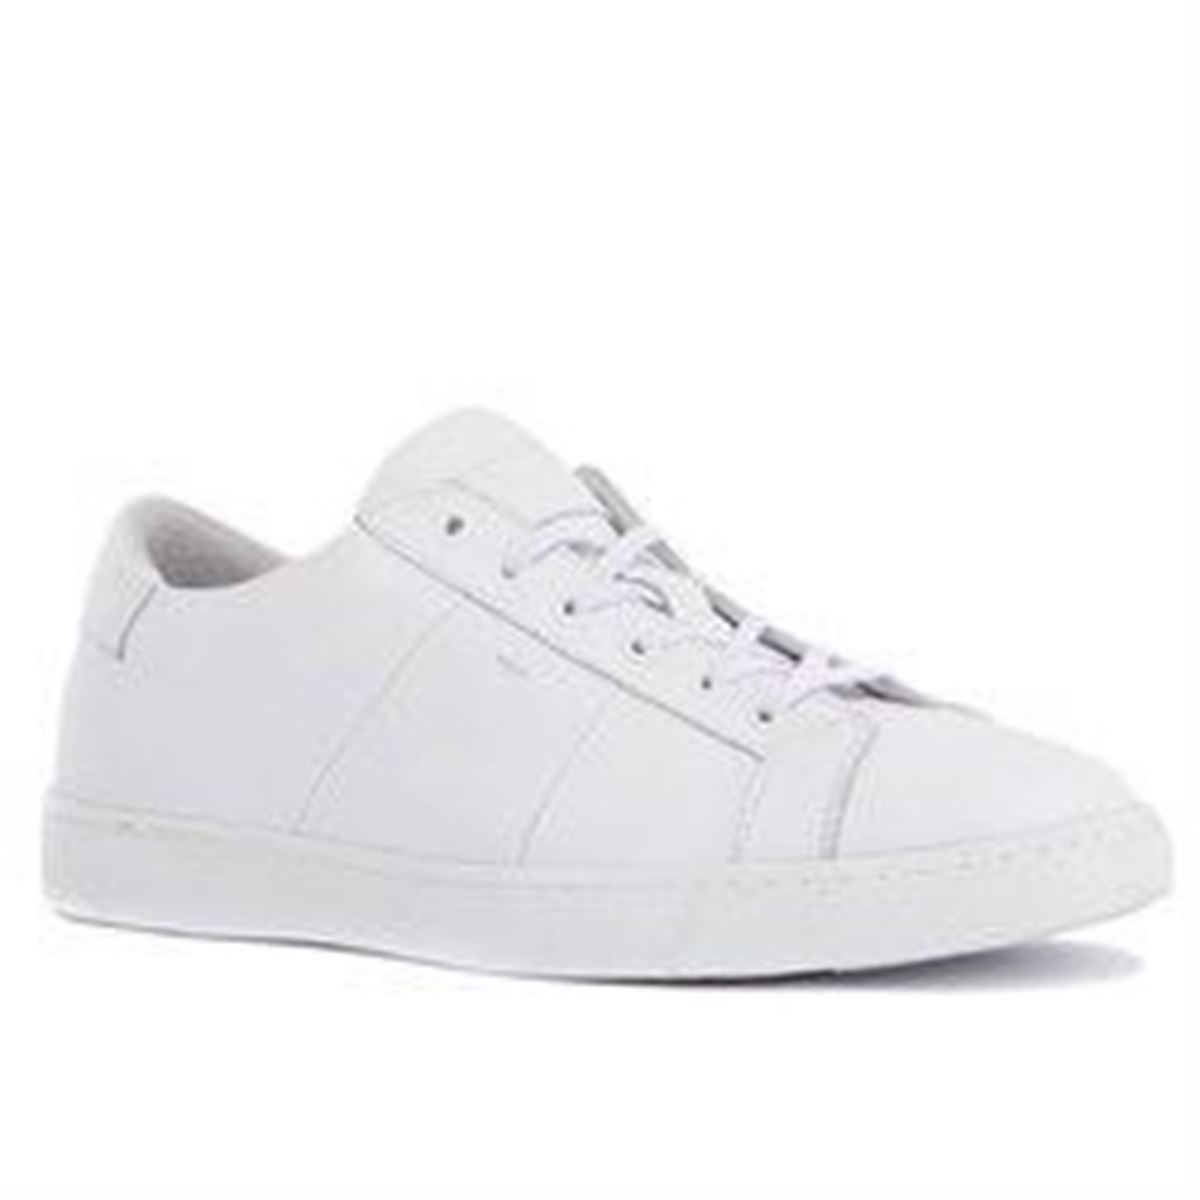 Sail Lakers - Beyaz Renk Deri Erkek Günlük Ayakkabı resmi